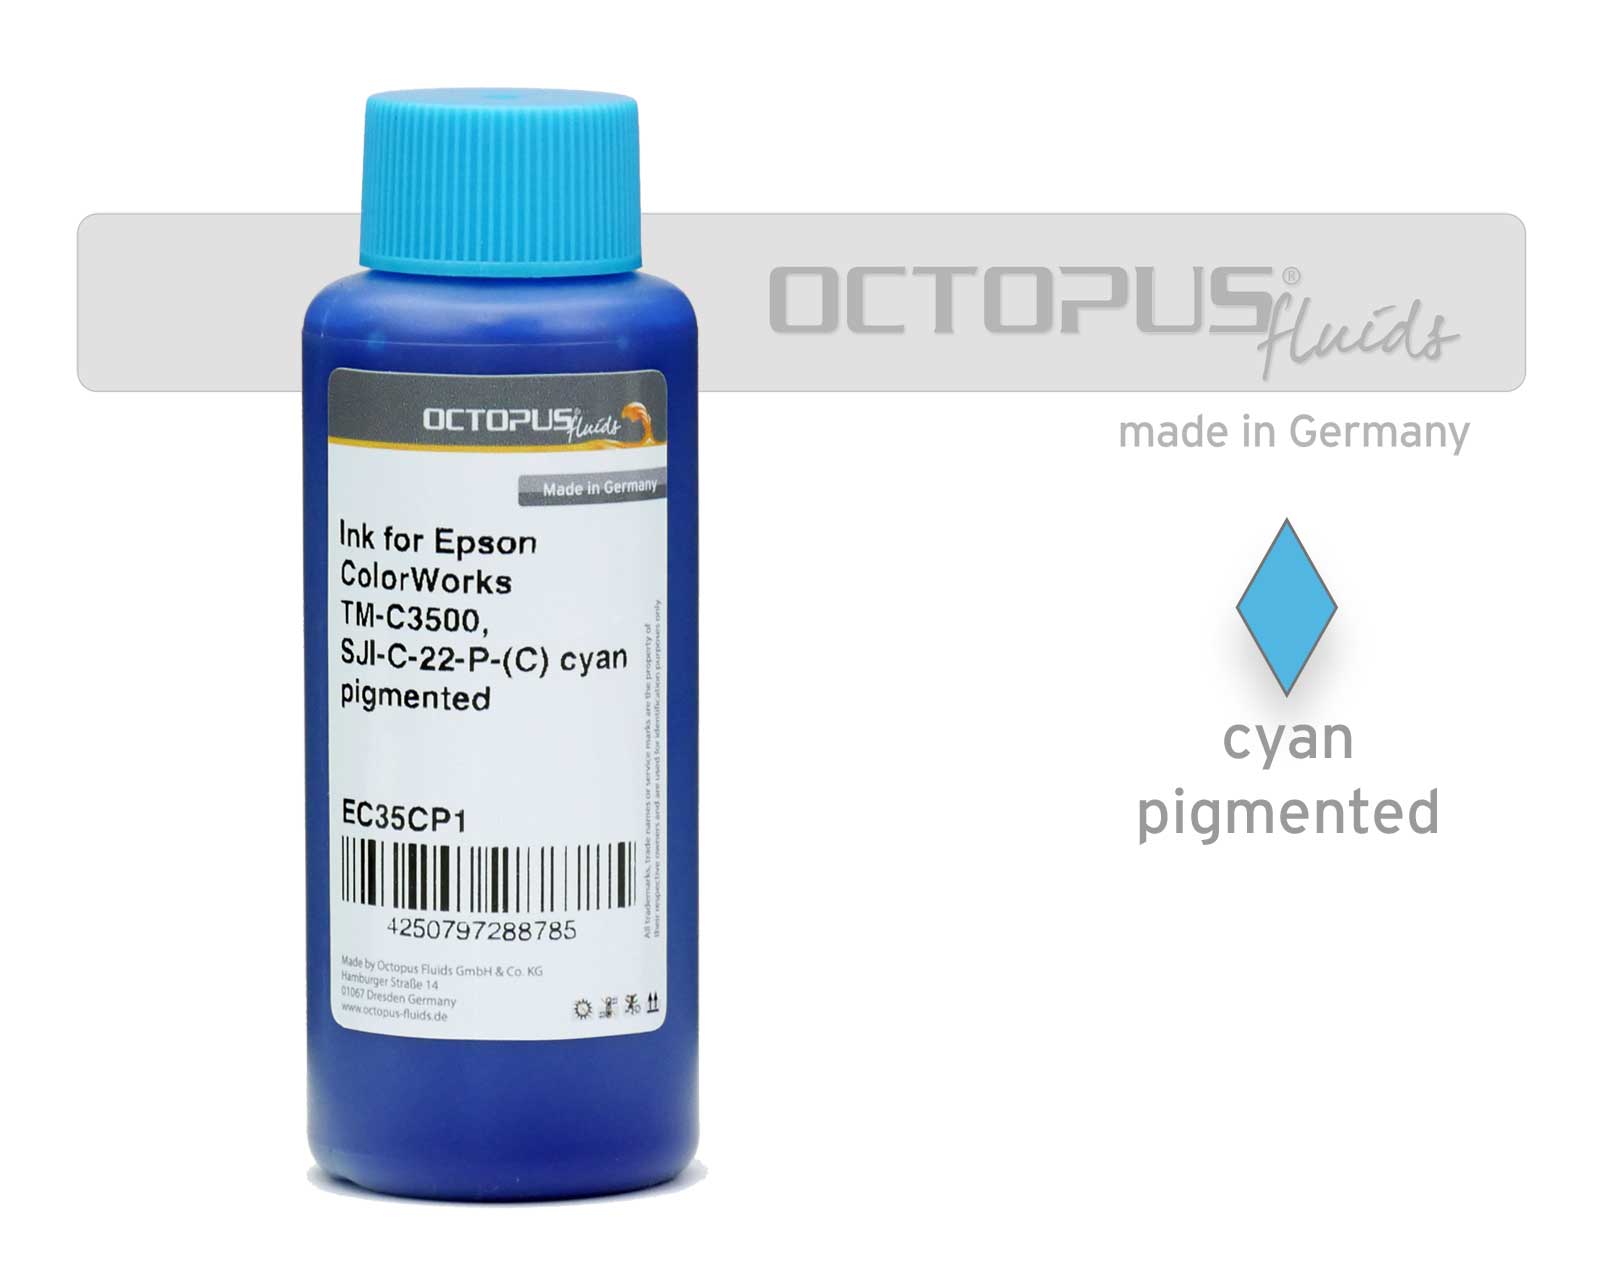 Druckertinte für Epson ColorWorks TM-C3500, SJI-C-22-P-(C) cyan